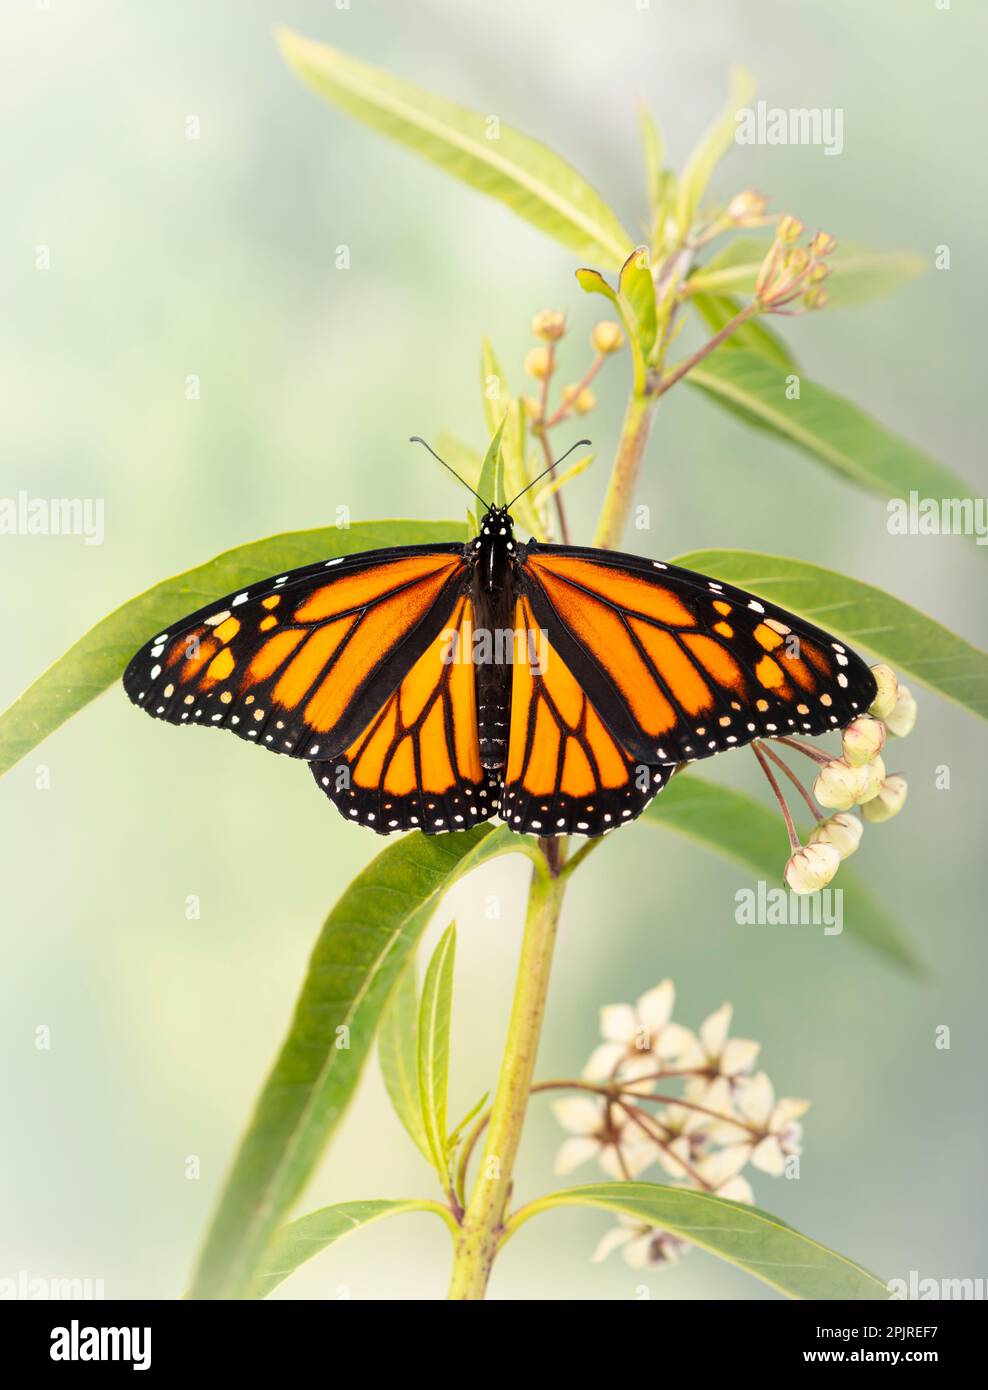 Un papillon monarque (danaus plexippus) avec ailes ouvertes, sur une plante de milkweed Banque D'Images